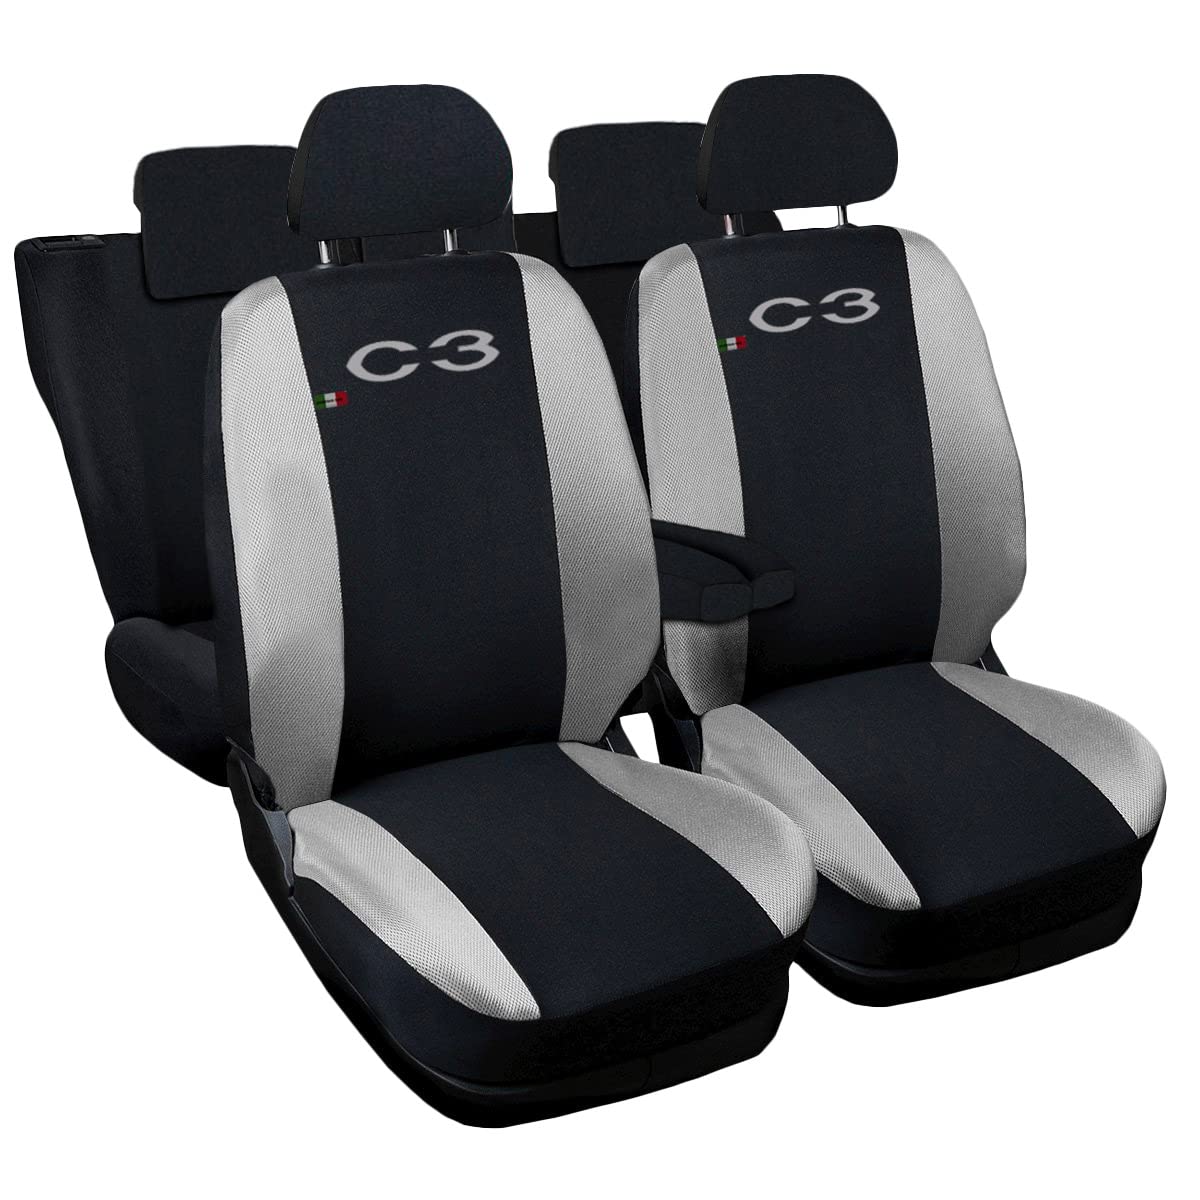 Lupex Shop Autositzbezüge kompatibel mit C3, Made in Italy, Polyestergewebe, kompletter Satz Vorder- und Rücksitze (Schwarz - Hellgrau) von Lupex Shop